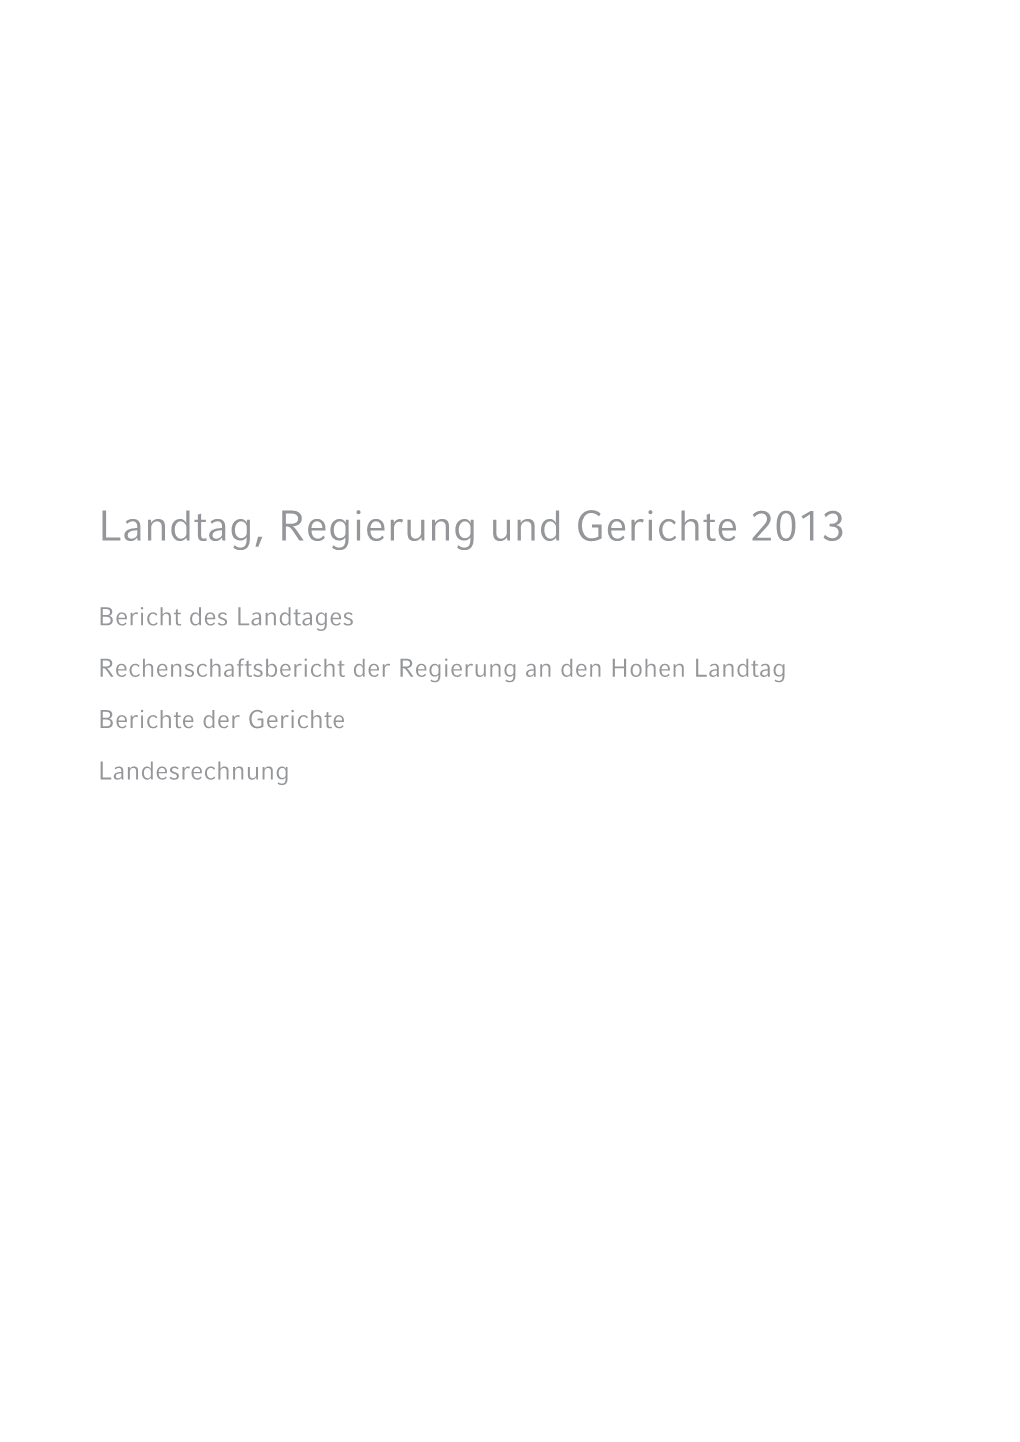 Rechenschaftsbericht 2013 Komplett